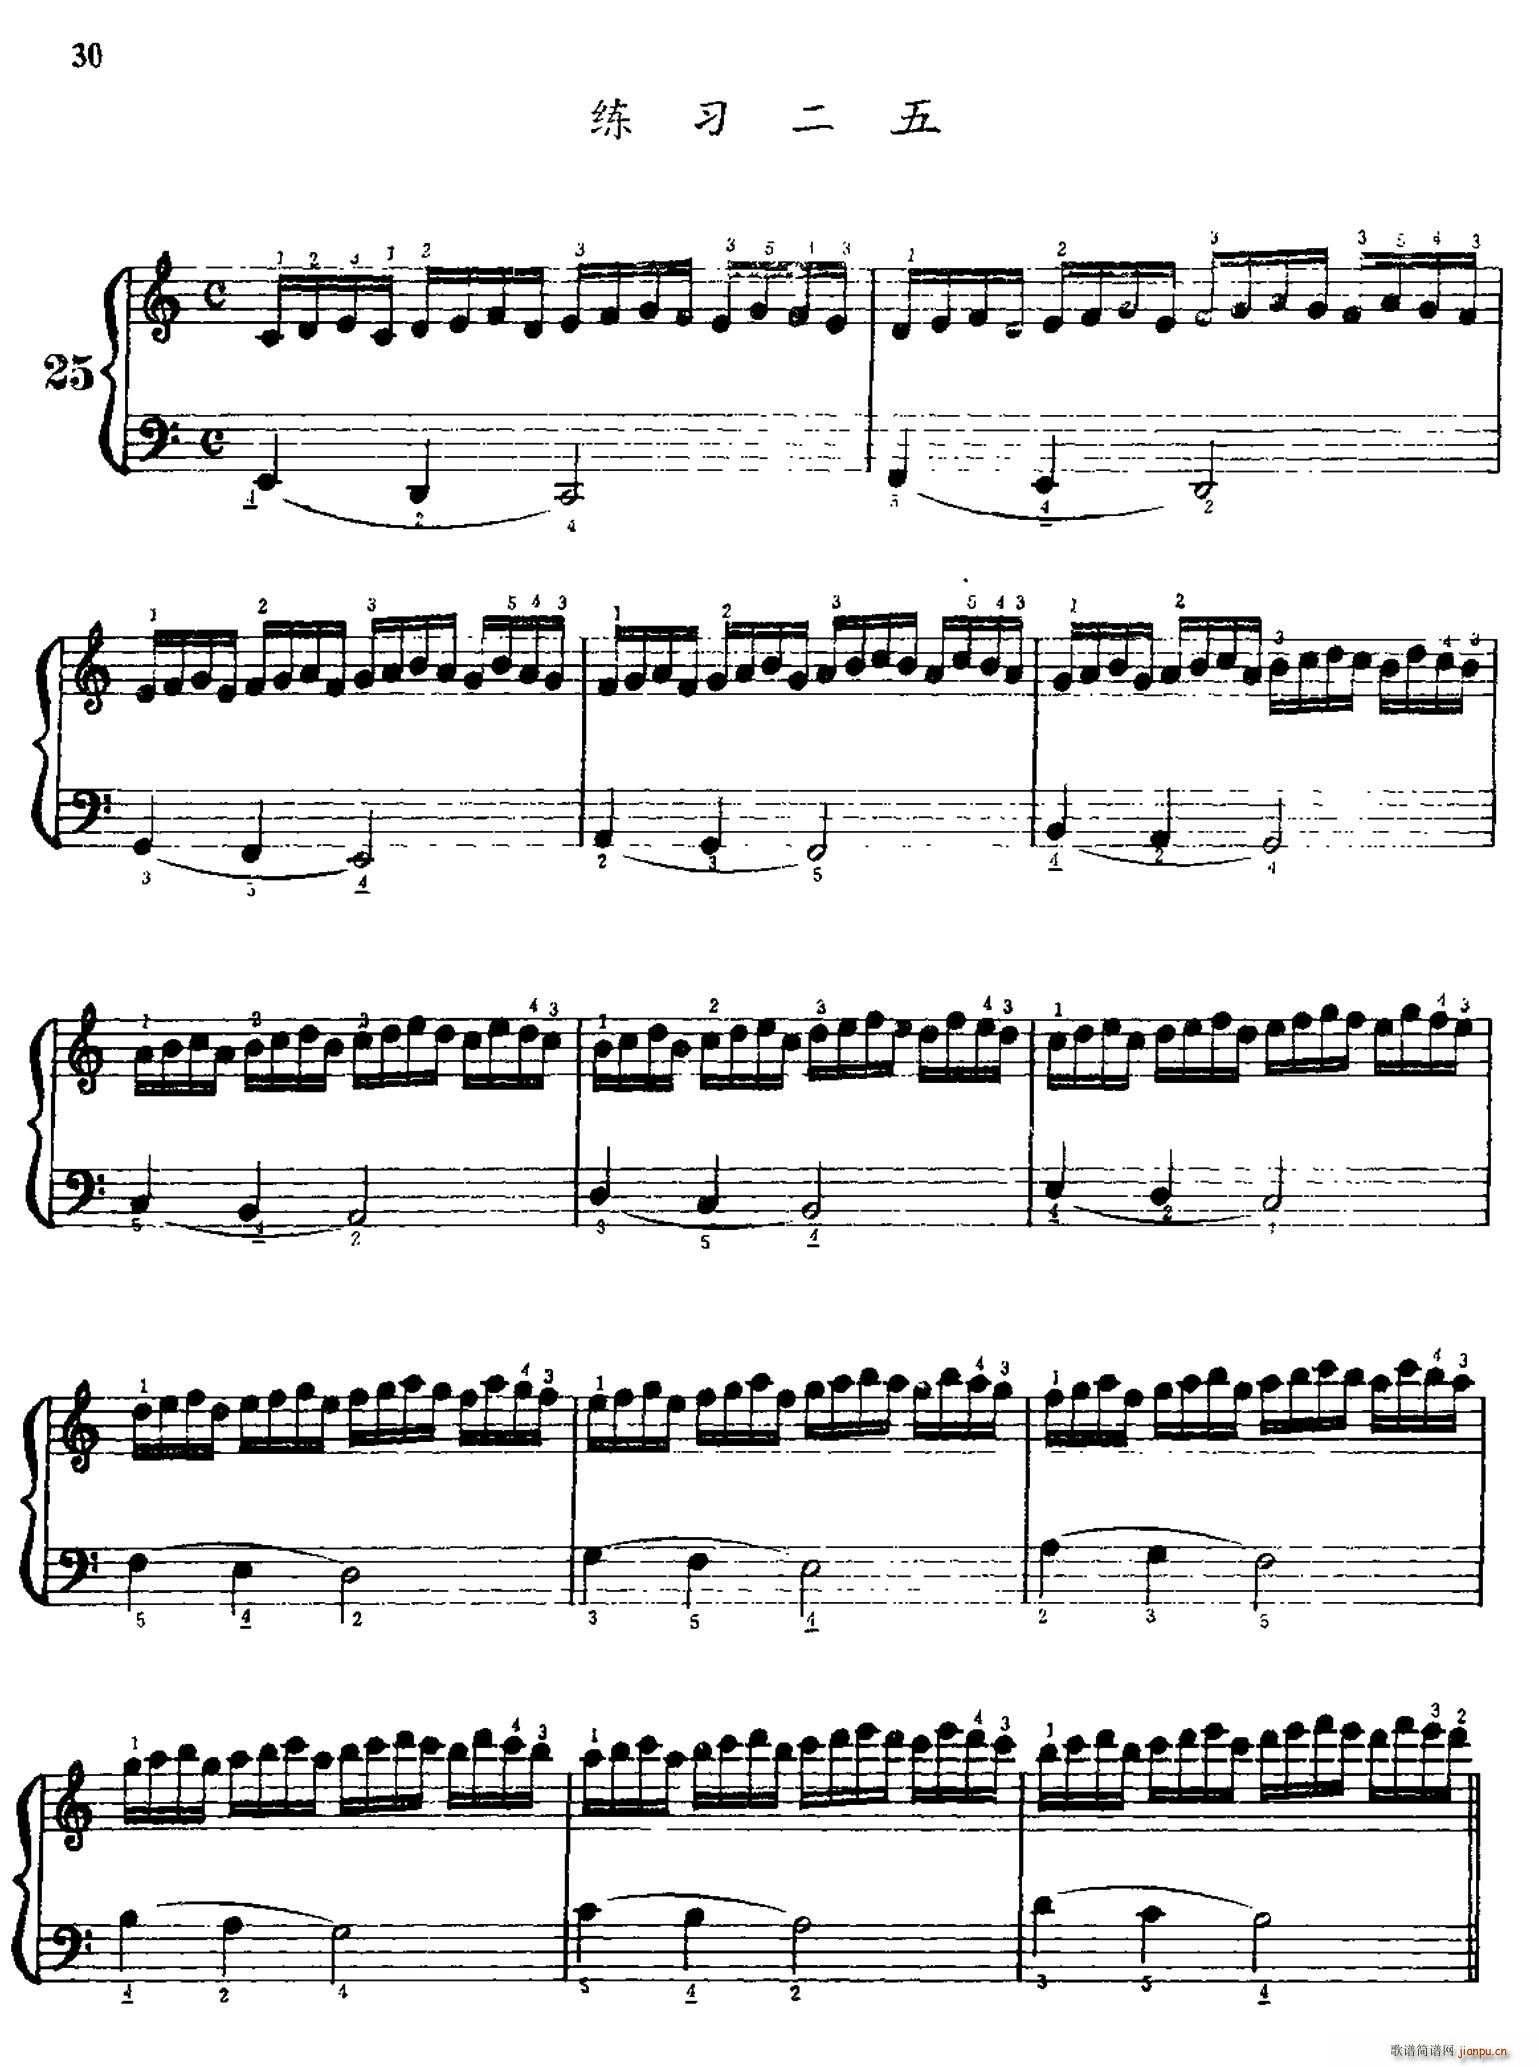 手风琴手指练习 第一部分 21 30(手风琴谱)9